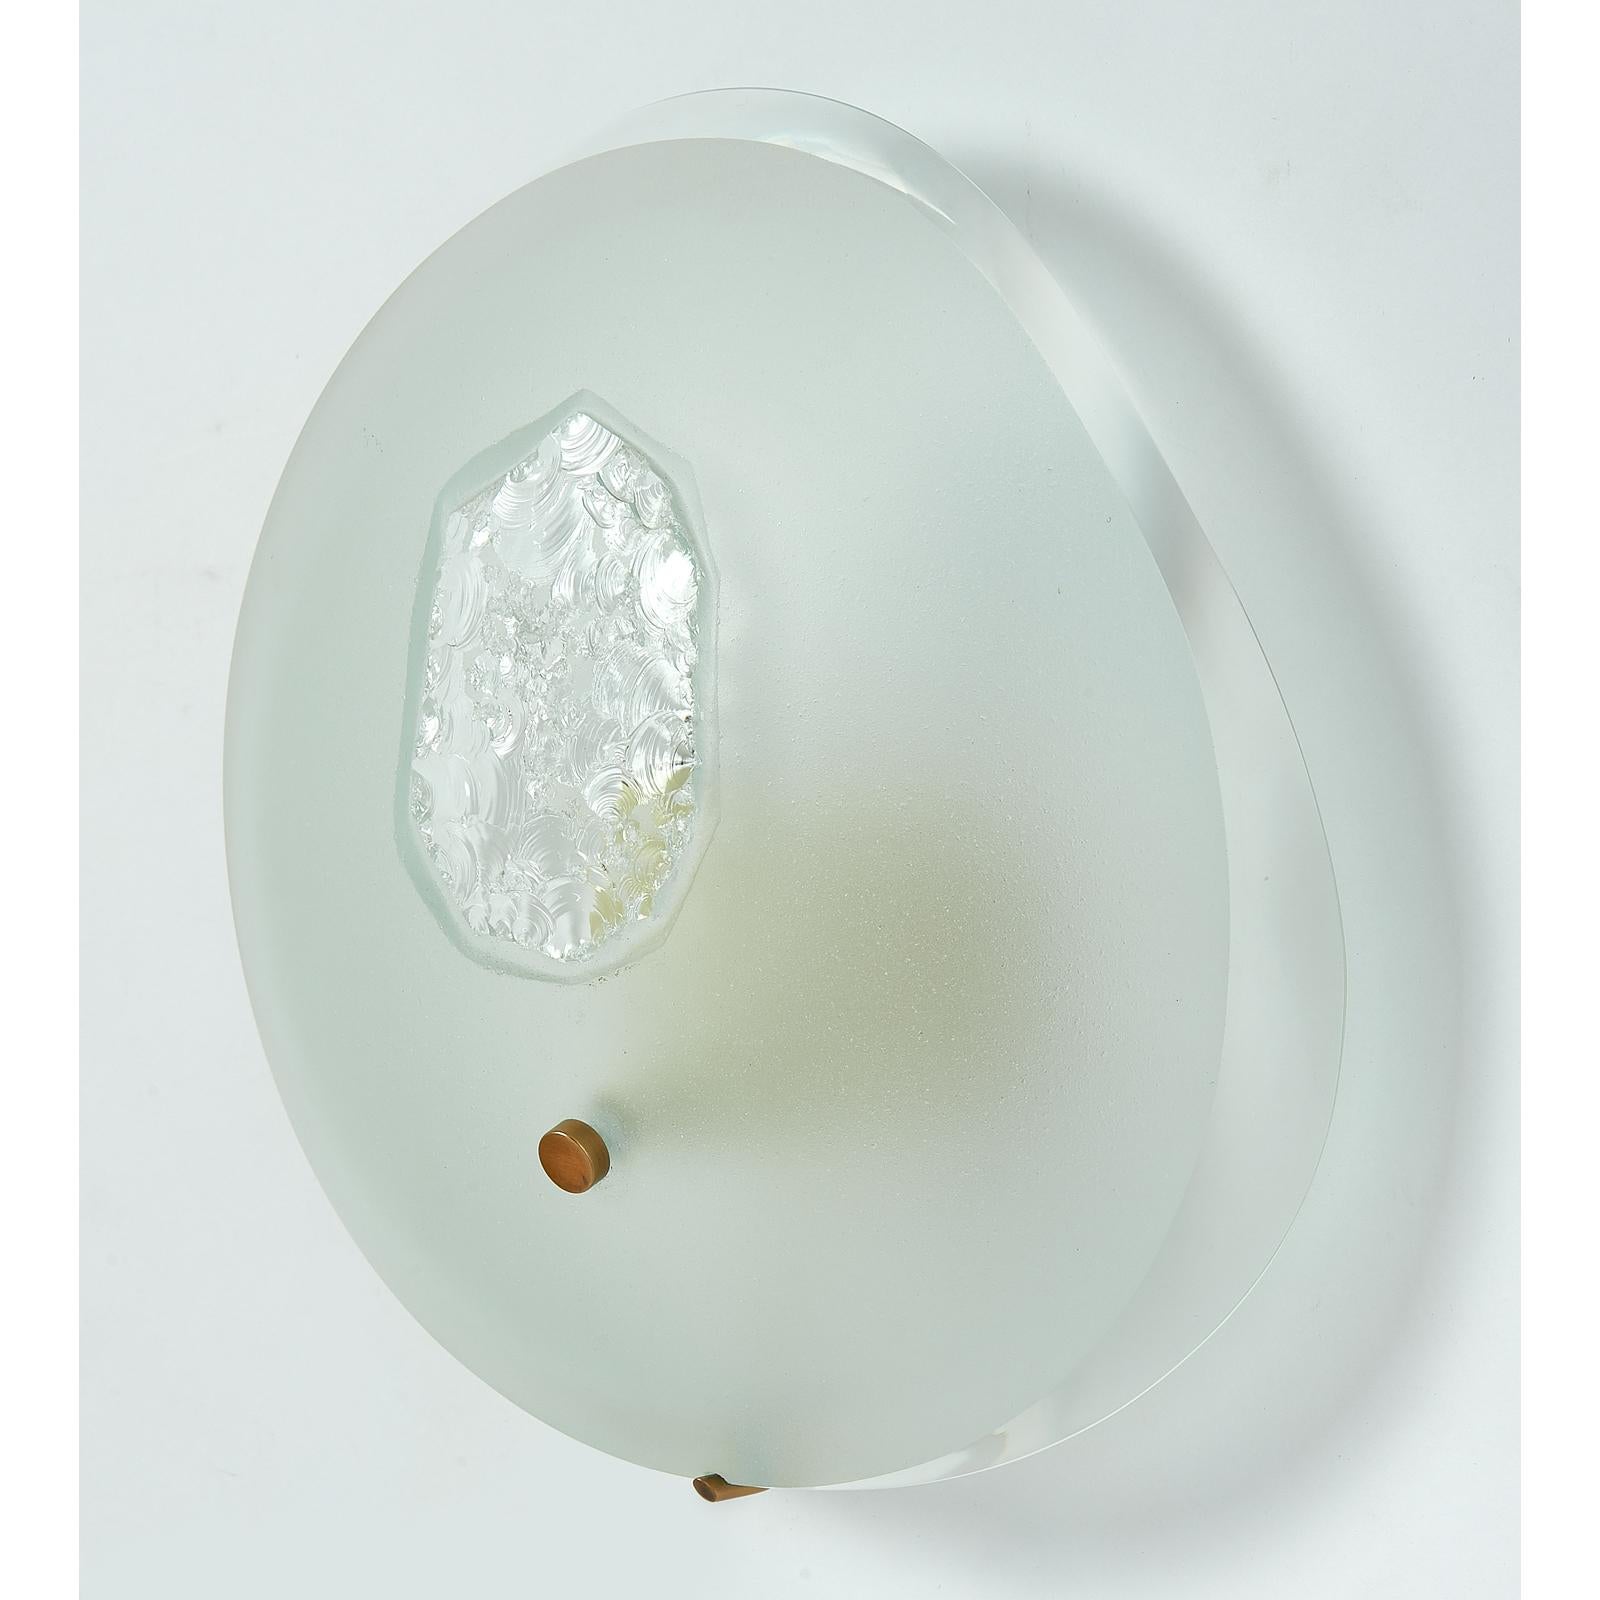 Max Ingrand (1908-1969) für Fontana Arte
Seltenes und größeres Paar von ovalen Wandleuchtern aus abgeschrägtem Milchglas mit gemeißeltem Zentralmotiv.
Italien, um 1960.
Abmessungen: 9.5 B x 9 H x 4 T
Ref: Martin-Vivier Max Ingrand,